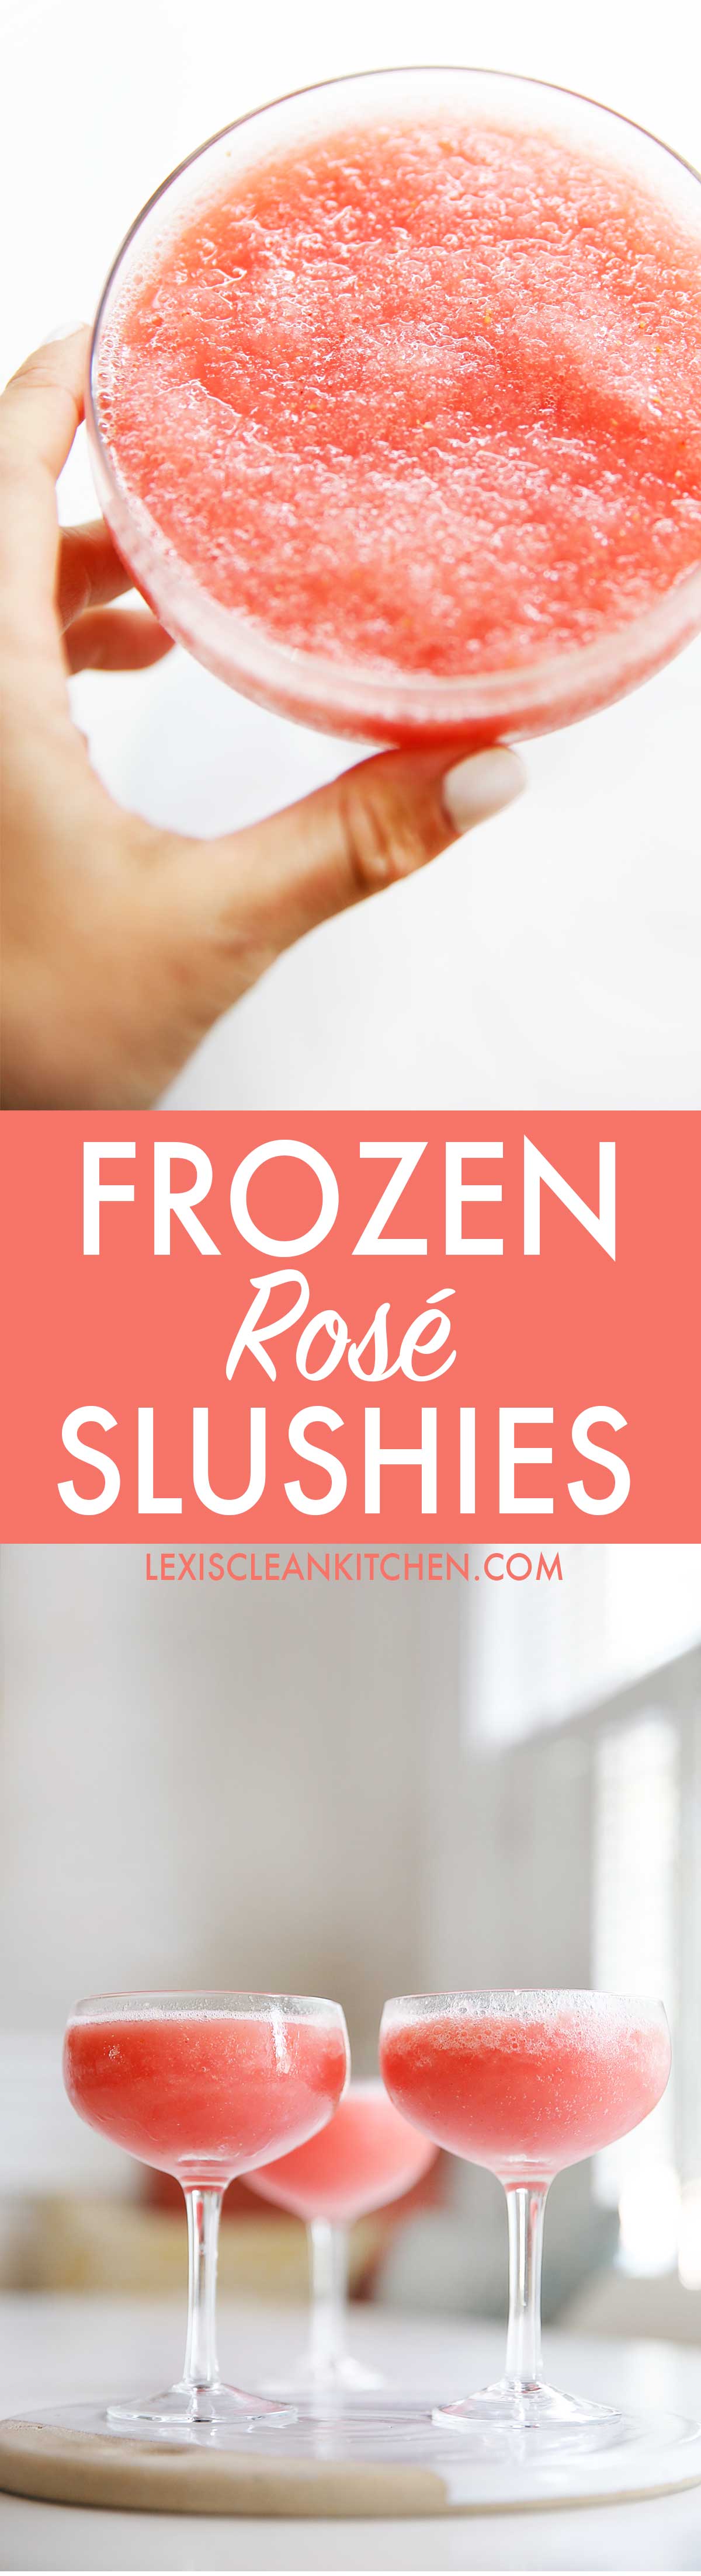 Frose Slushies | Lexi's Clean Kitchen